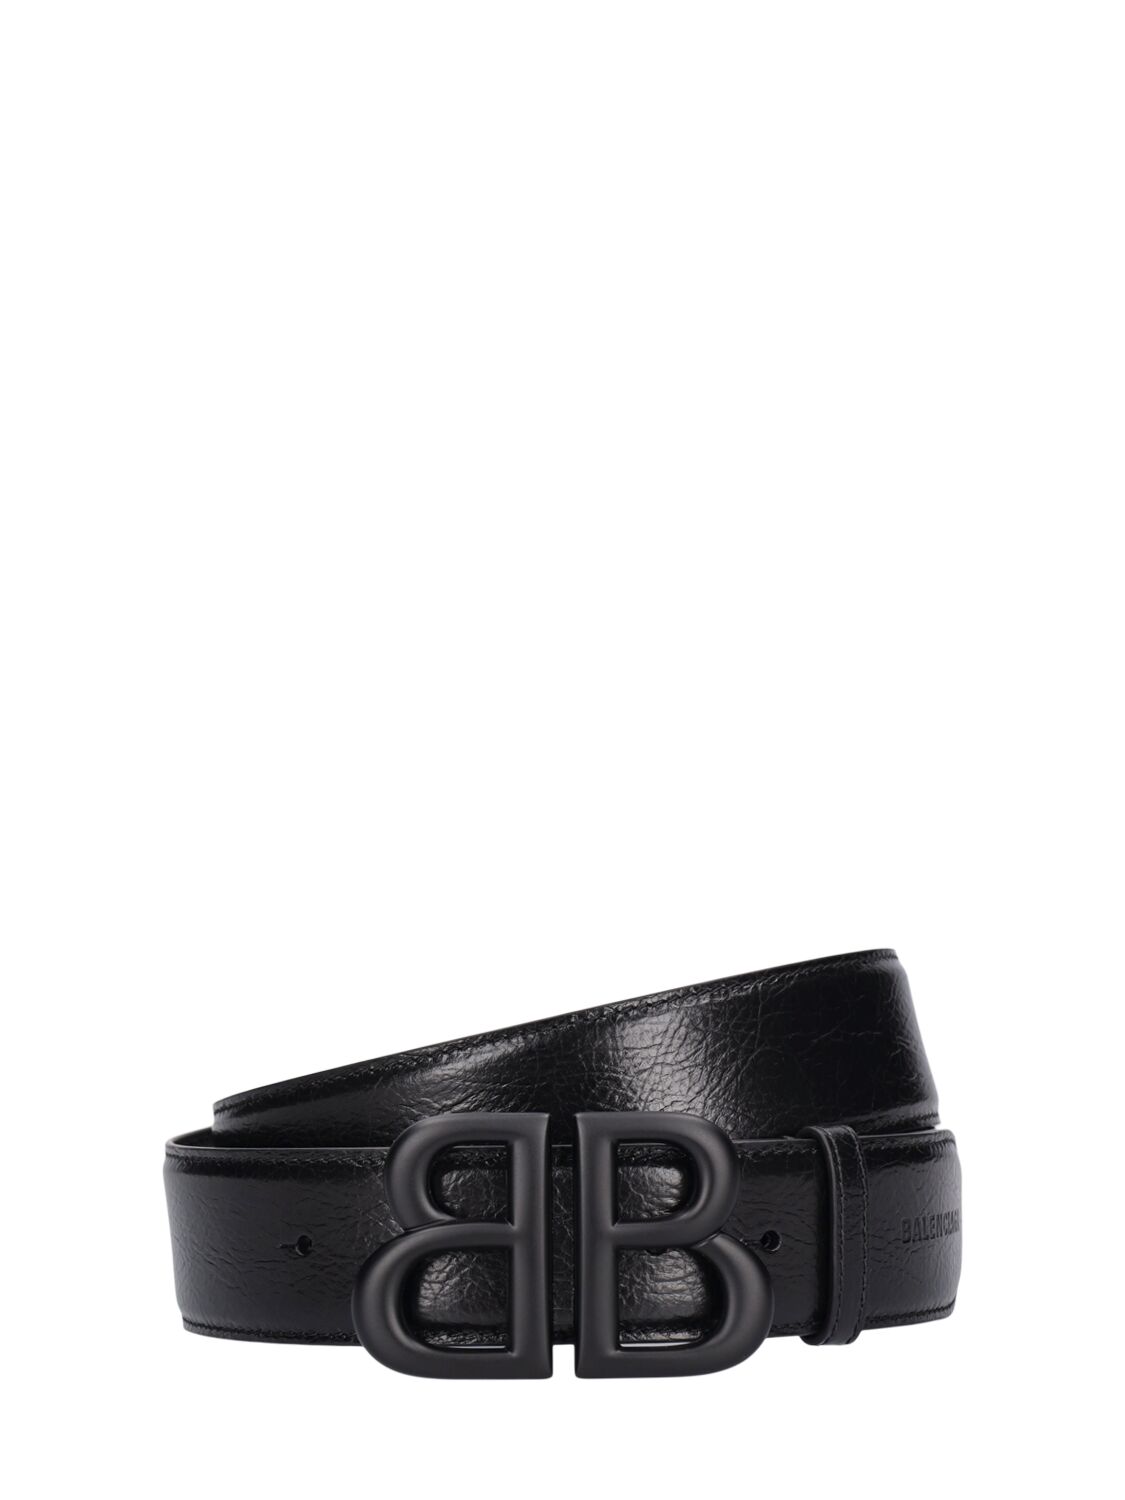 4.0cm Monaco Leather Belt